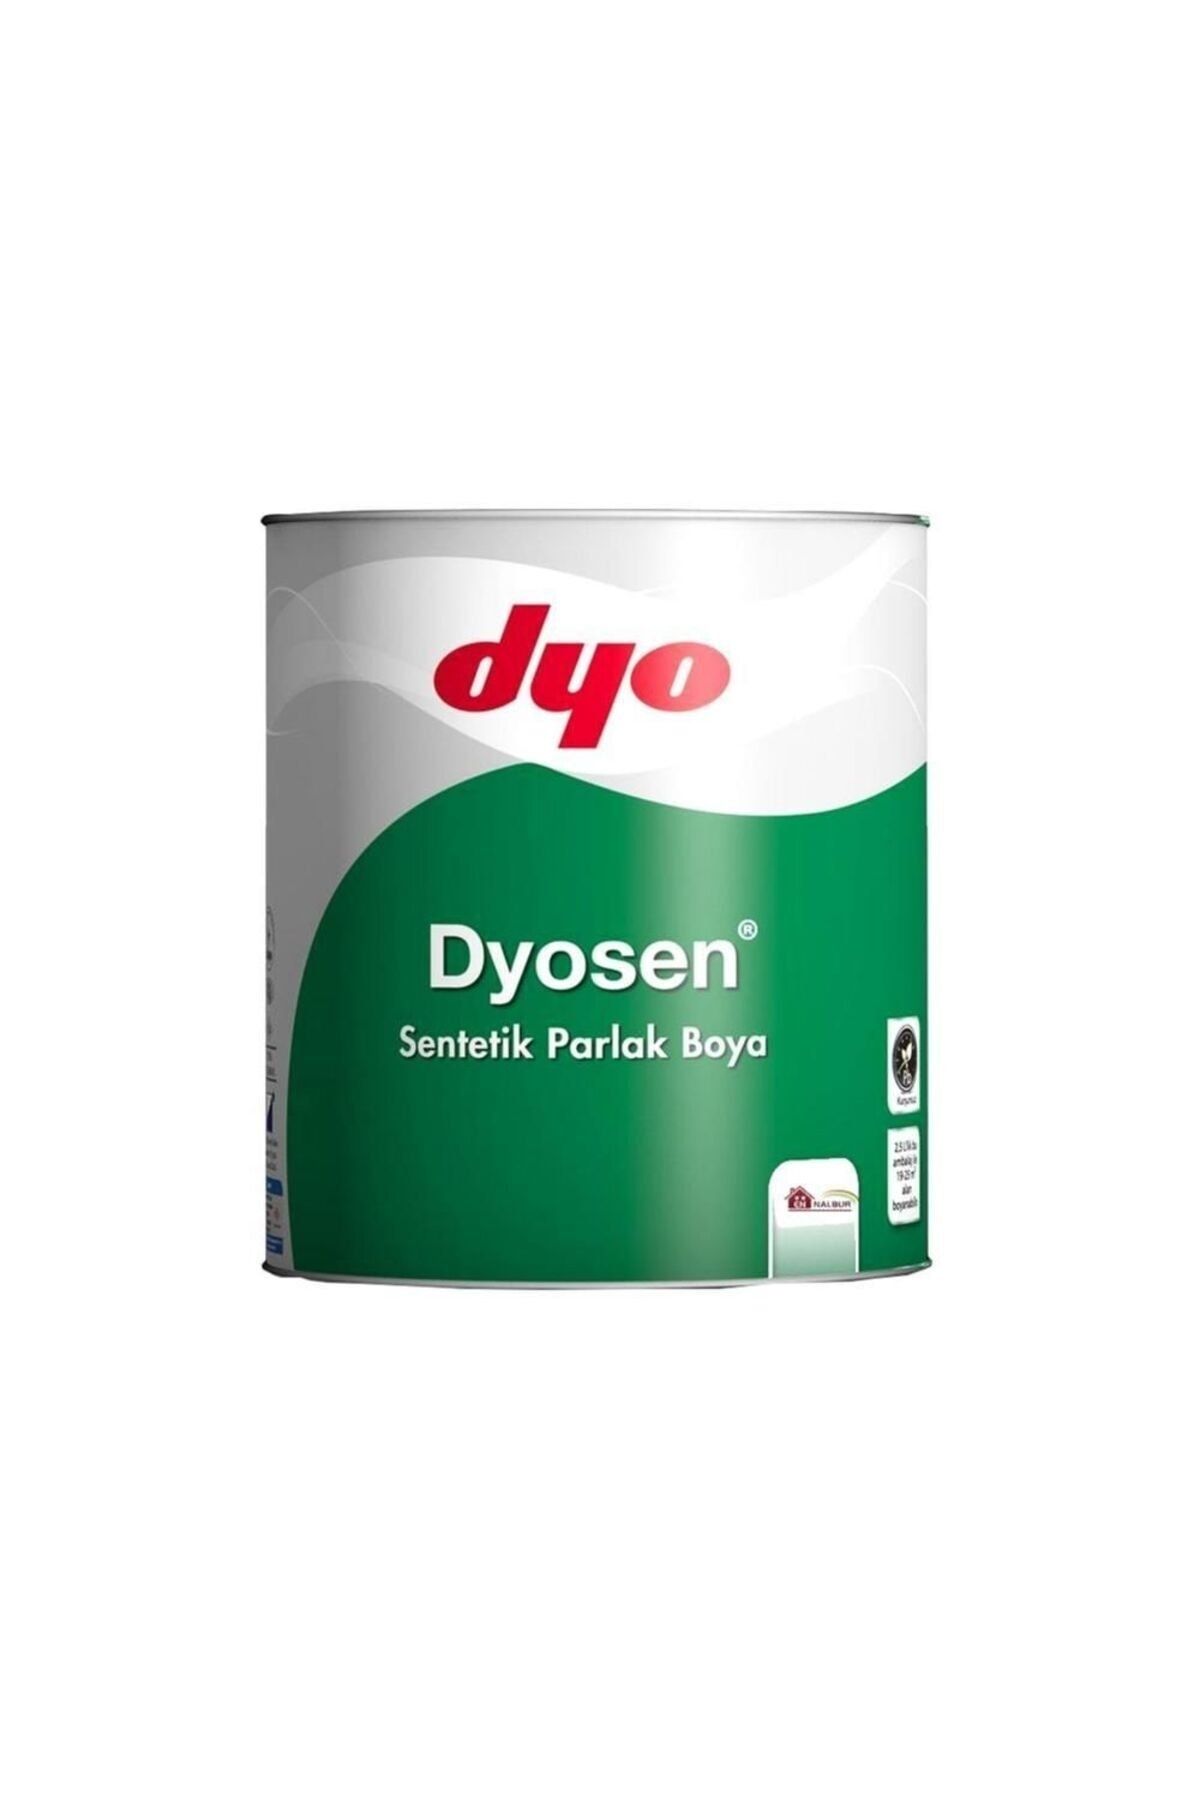 Dyo Dyosen Sentetik Parlak Boya - Yağlı Boya Yeşil - 2.5lt